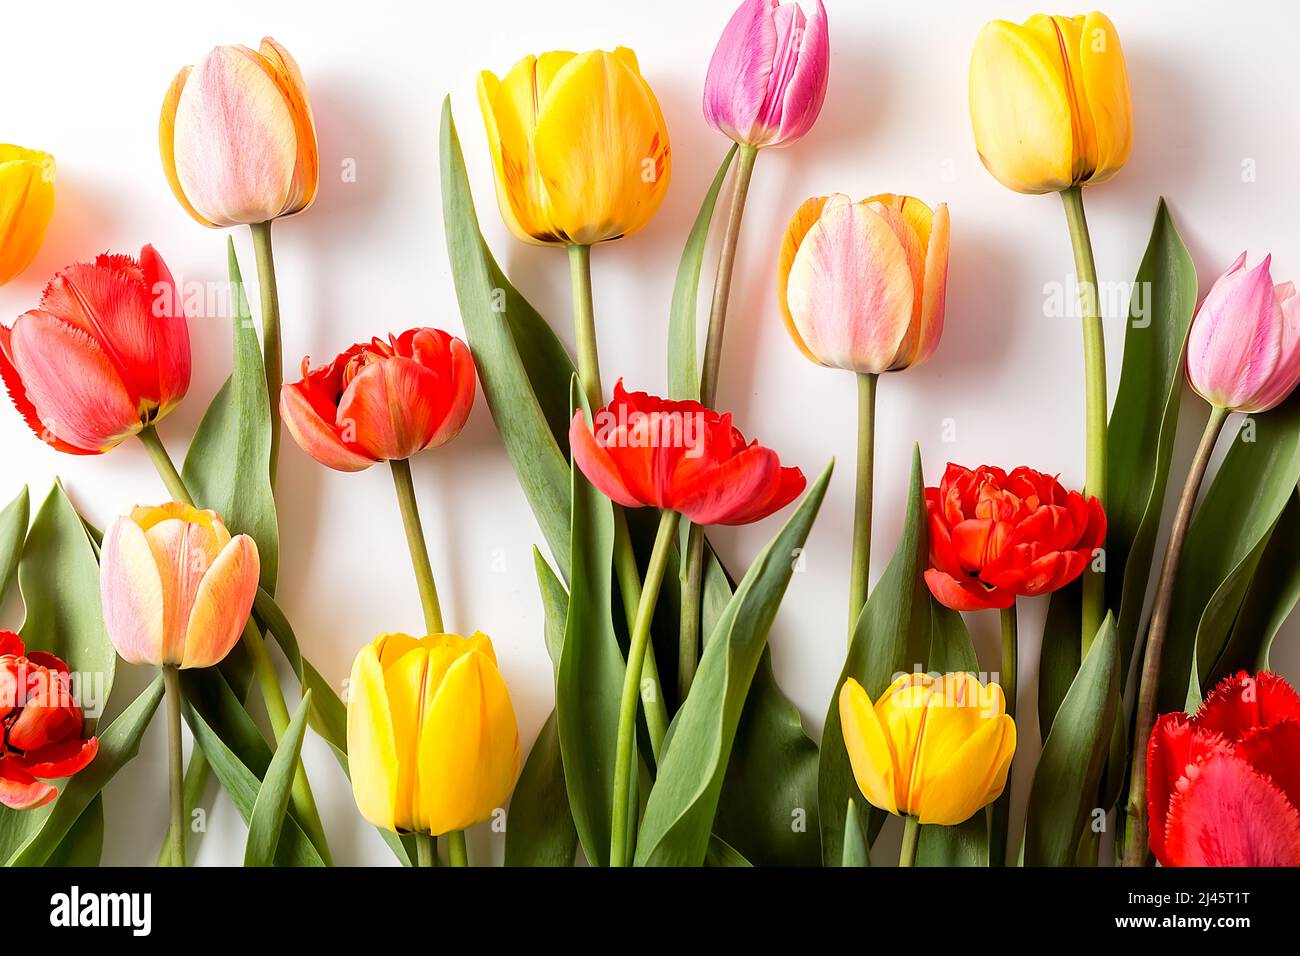 Un bouquet de tulipes de différentes couleurs sur fond blanc. Un endroit prêt pour votre texte d'invitation, Félicitations. Banque D'Images